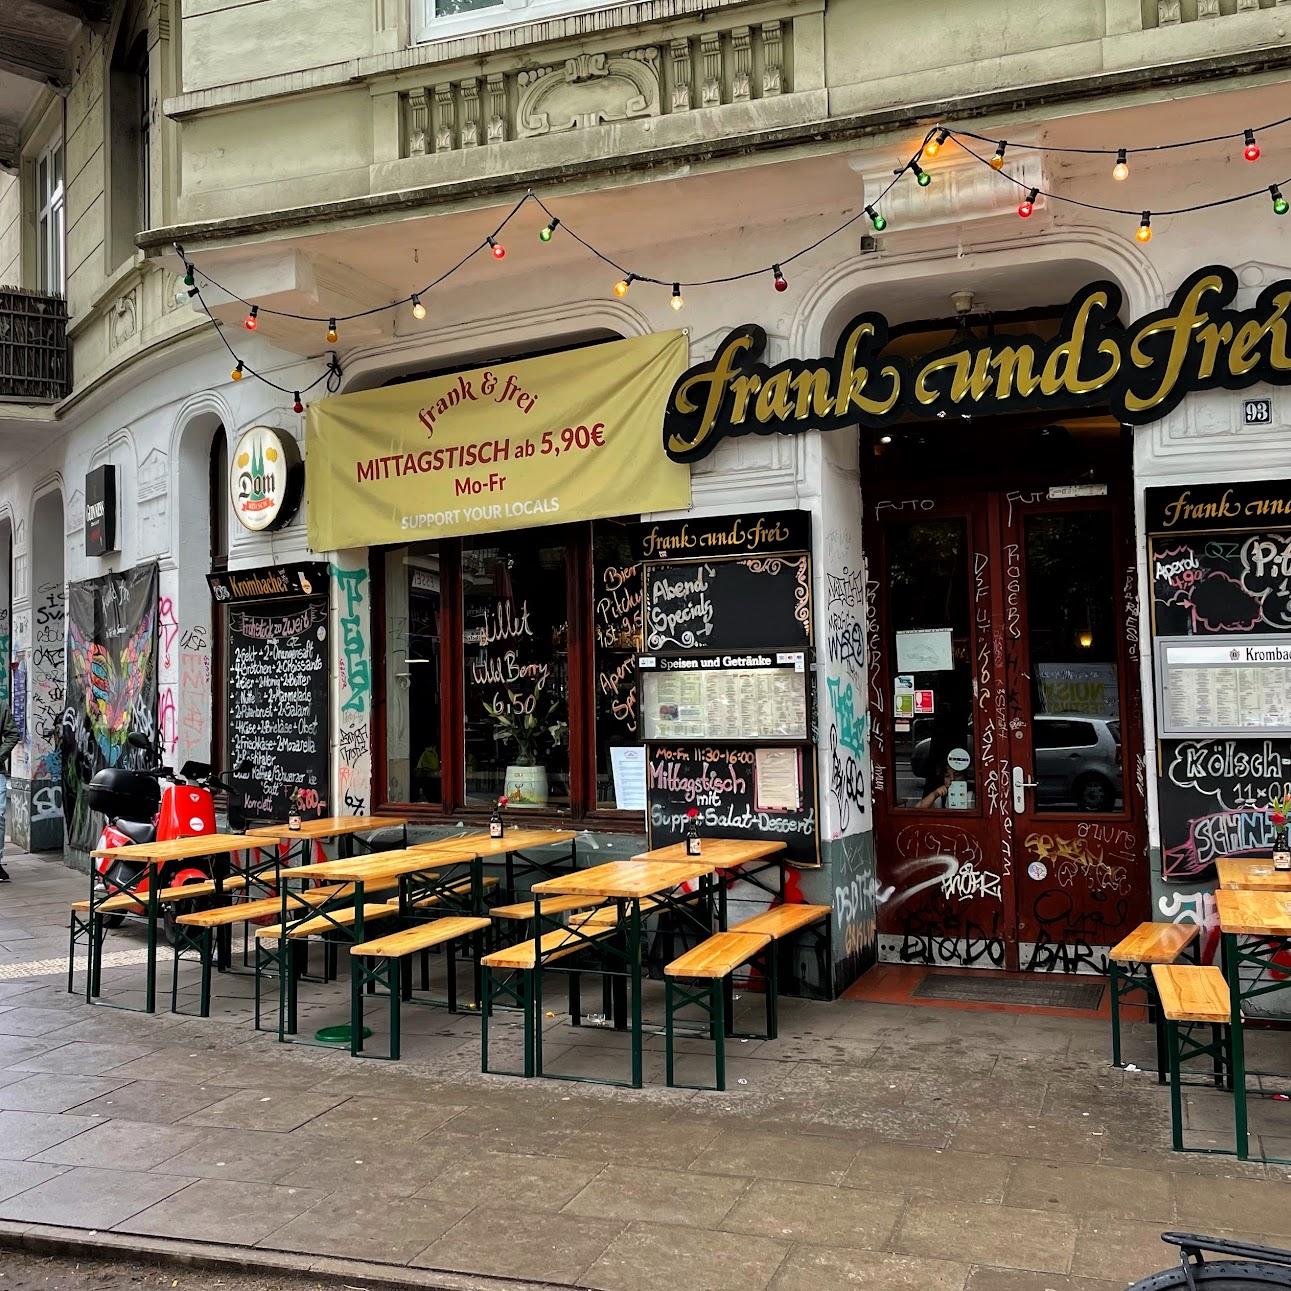 Restaurant "Frank und Frei" in Hamburg